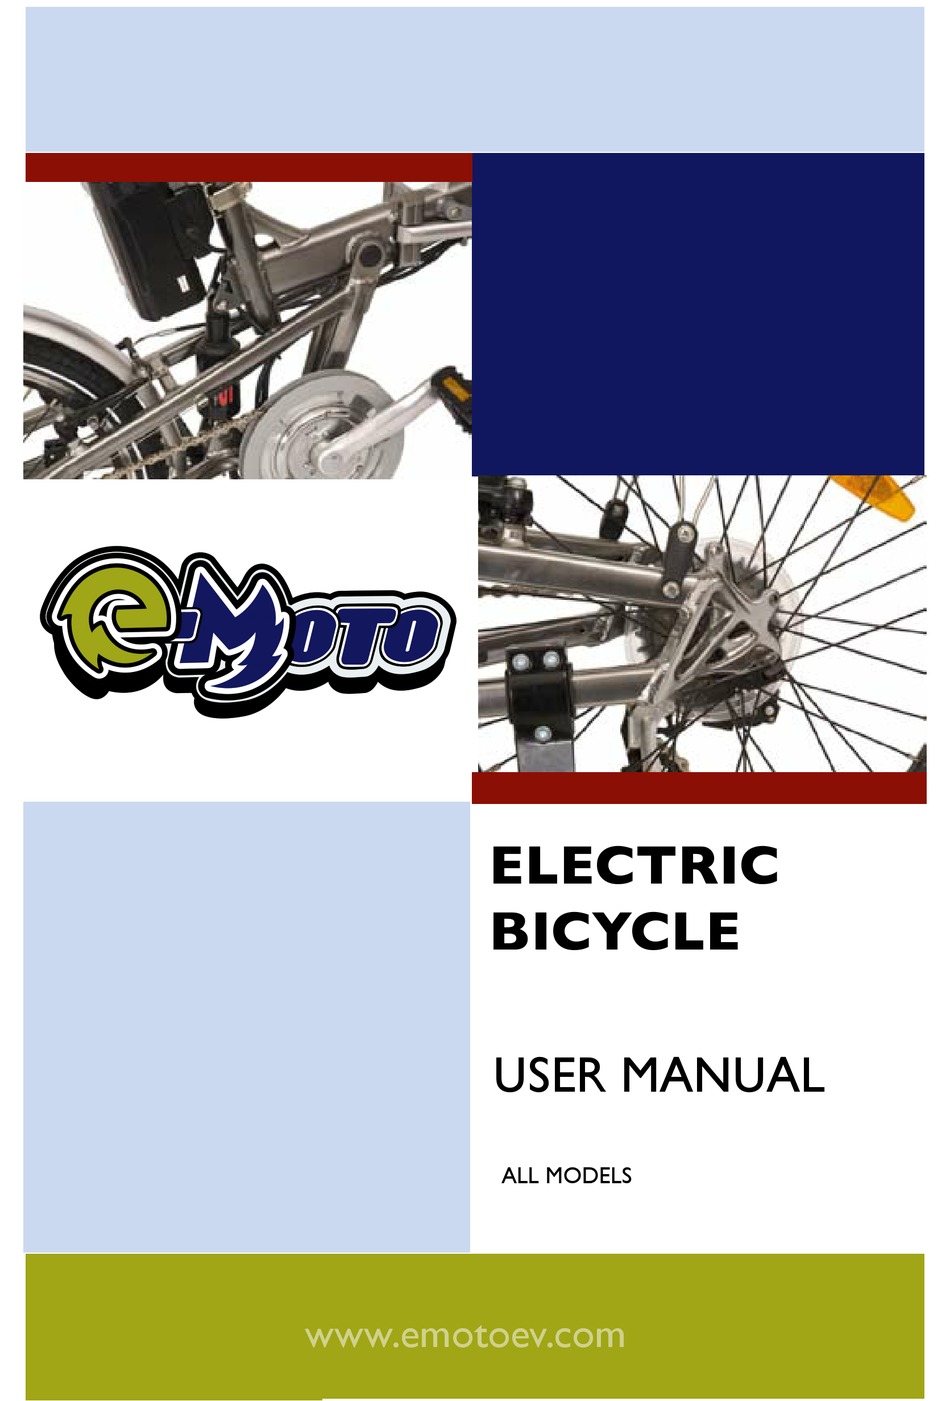 EMOTO ELECTRIC BICYCLE USER MANUAL Pdf Download ManualsLib